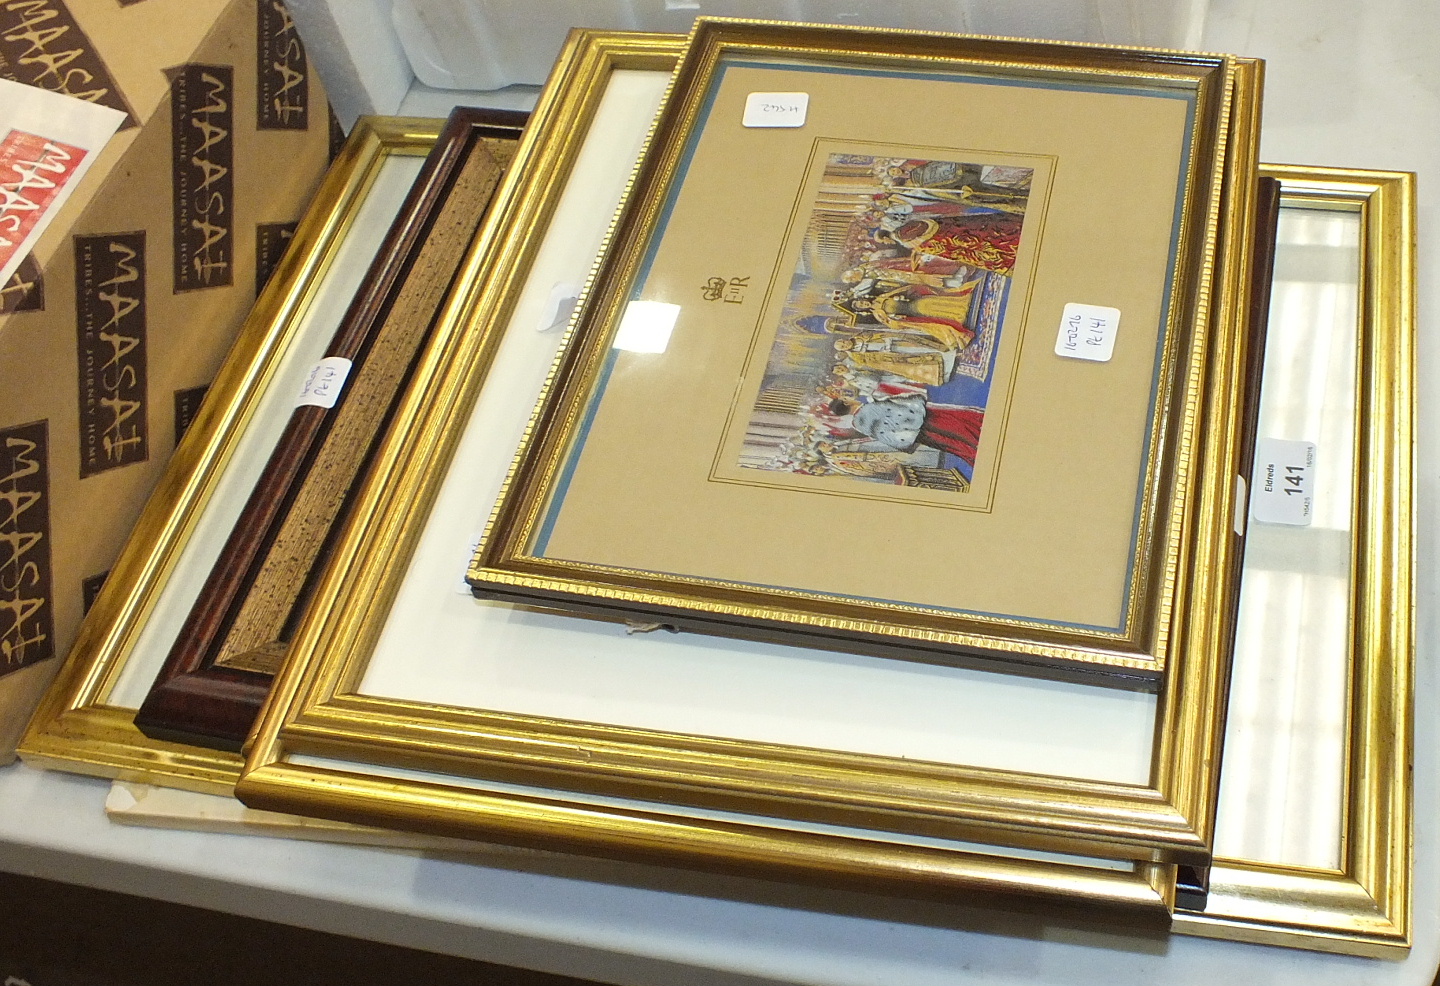 After Pierre-Auguste Cot, 'Le Printemps', a framed monochrome silk-work print, 32 x 17.5cm, a